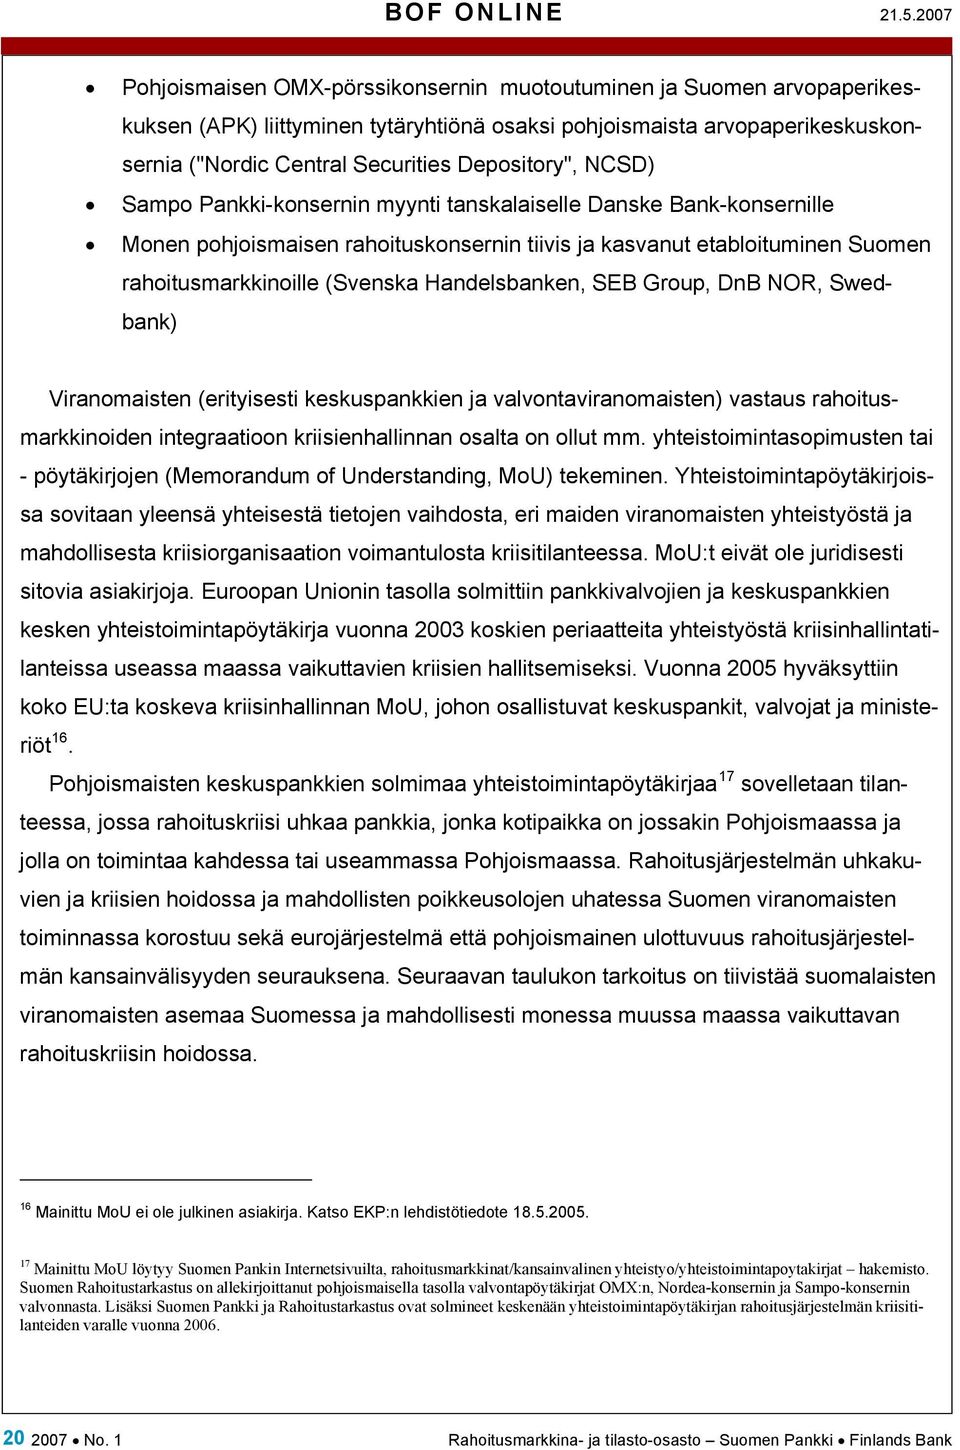 Depository", NCSD) Sampo Pankki-konsernin myynti tanskalaiselle Danske Bank-konsernille Monen pohjoismaisen rahoituskonsernin tiivis ja kasvanut etabloituminen Suomen rahoitusmarkkinoille (Svenska